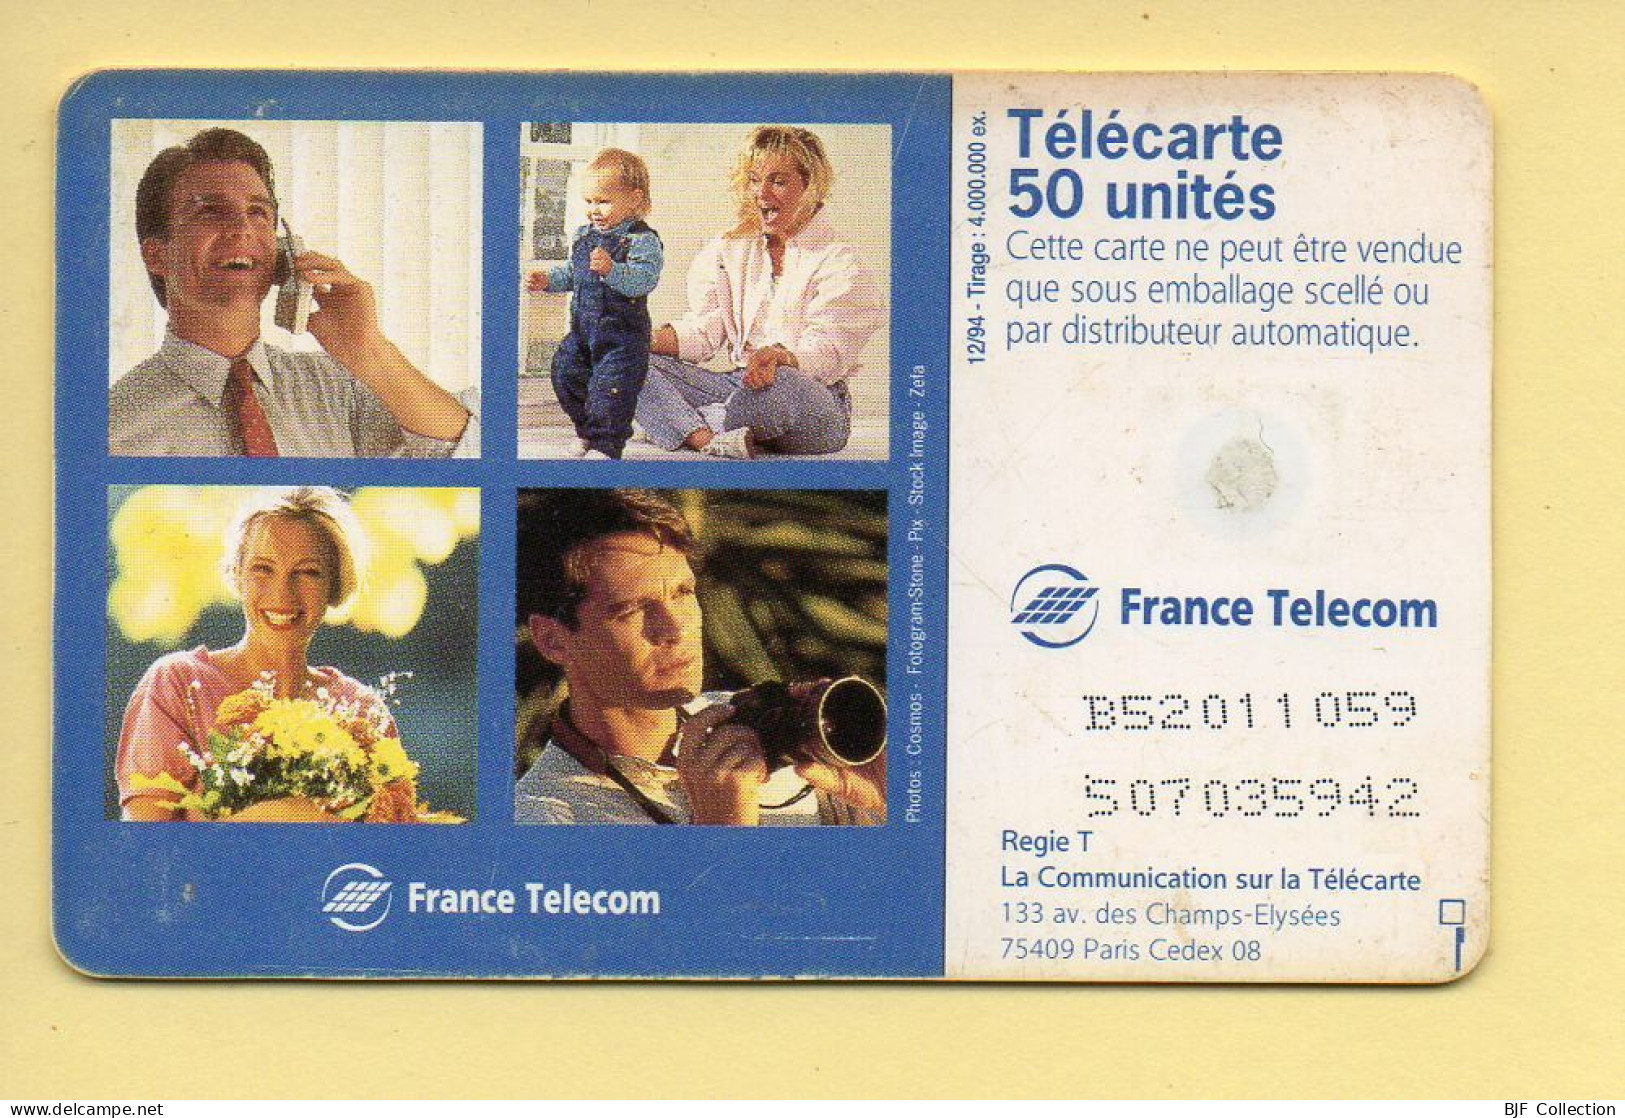 Télécarte 1994 : VOEUX FRANCE TELECOM / 50 Unités / Numéro B52011059/507035942 / 12-94 (voir Puce Et Numéro Au Dos) - 1994